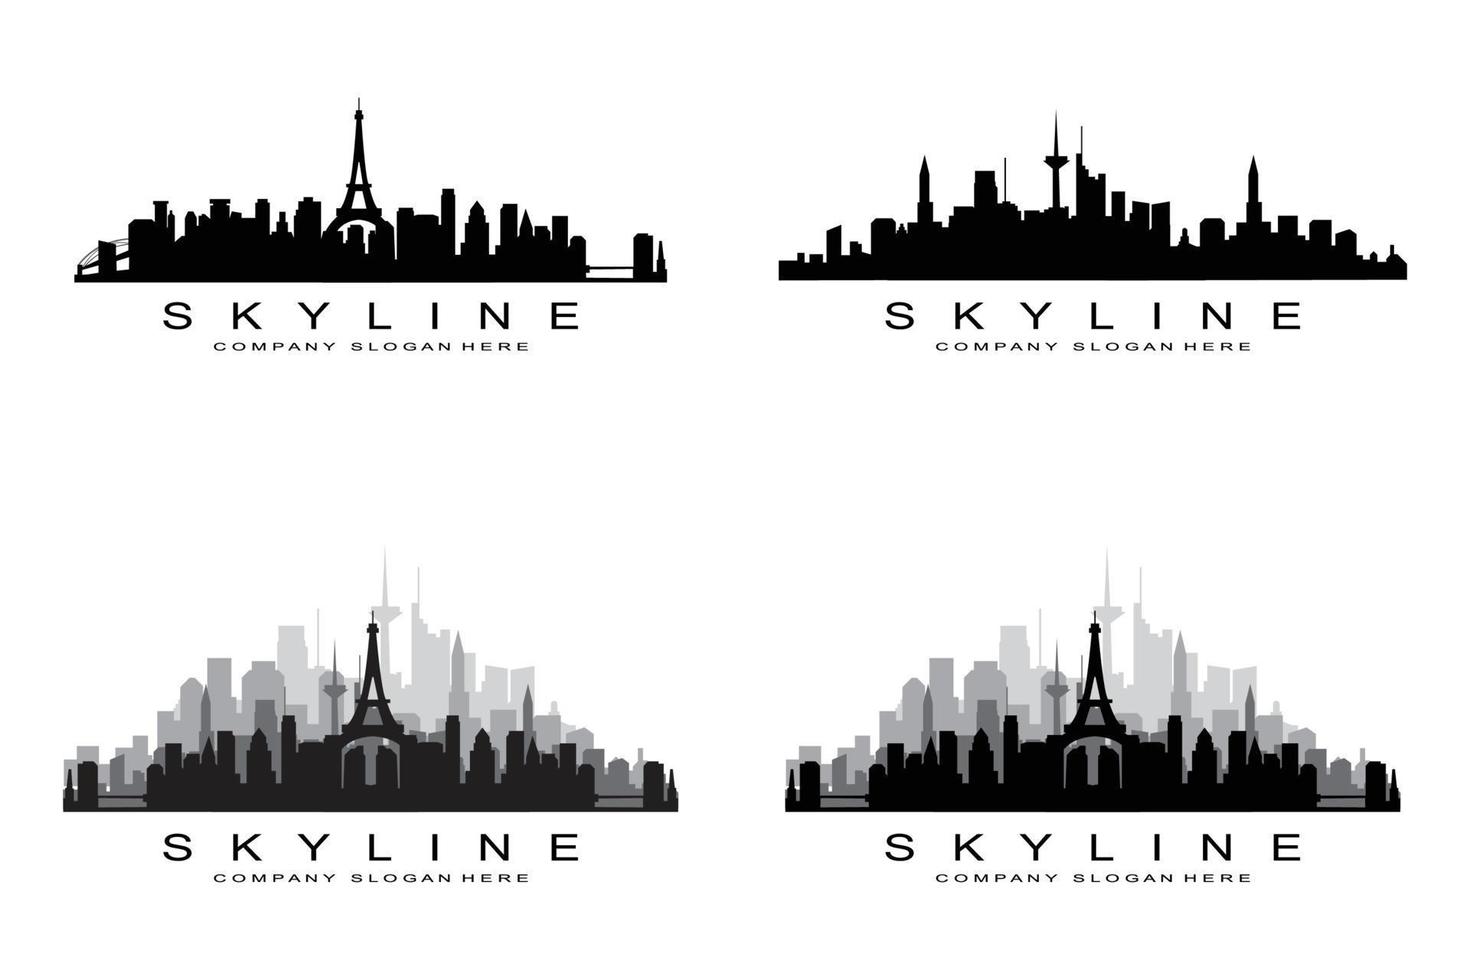 horizonte da cidade, arranha-céu para vetor de design de logotipo de construção imobiliária urbana